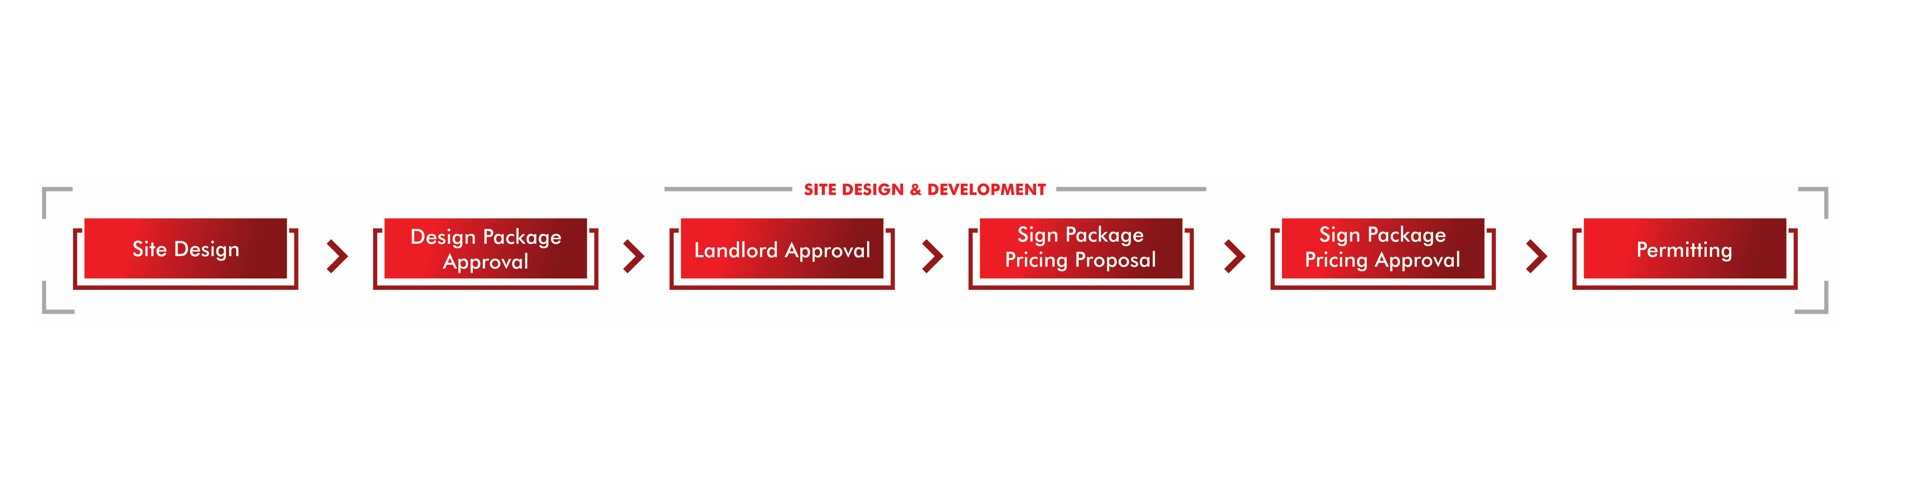 site-design-development-header